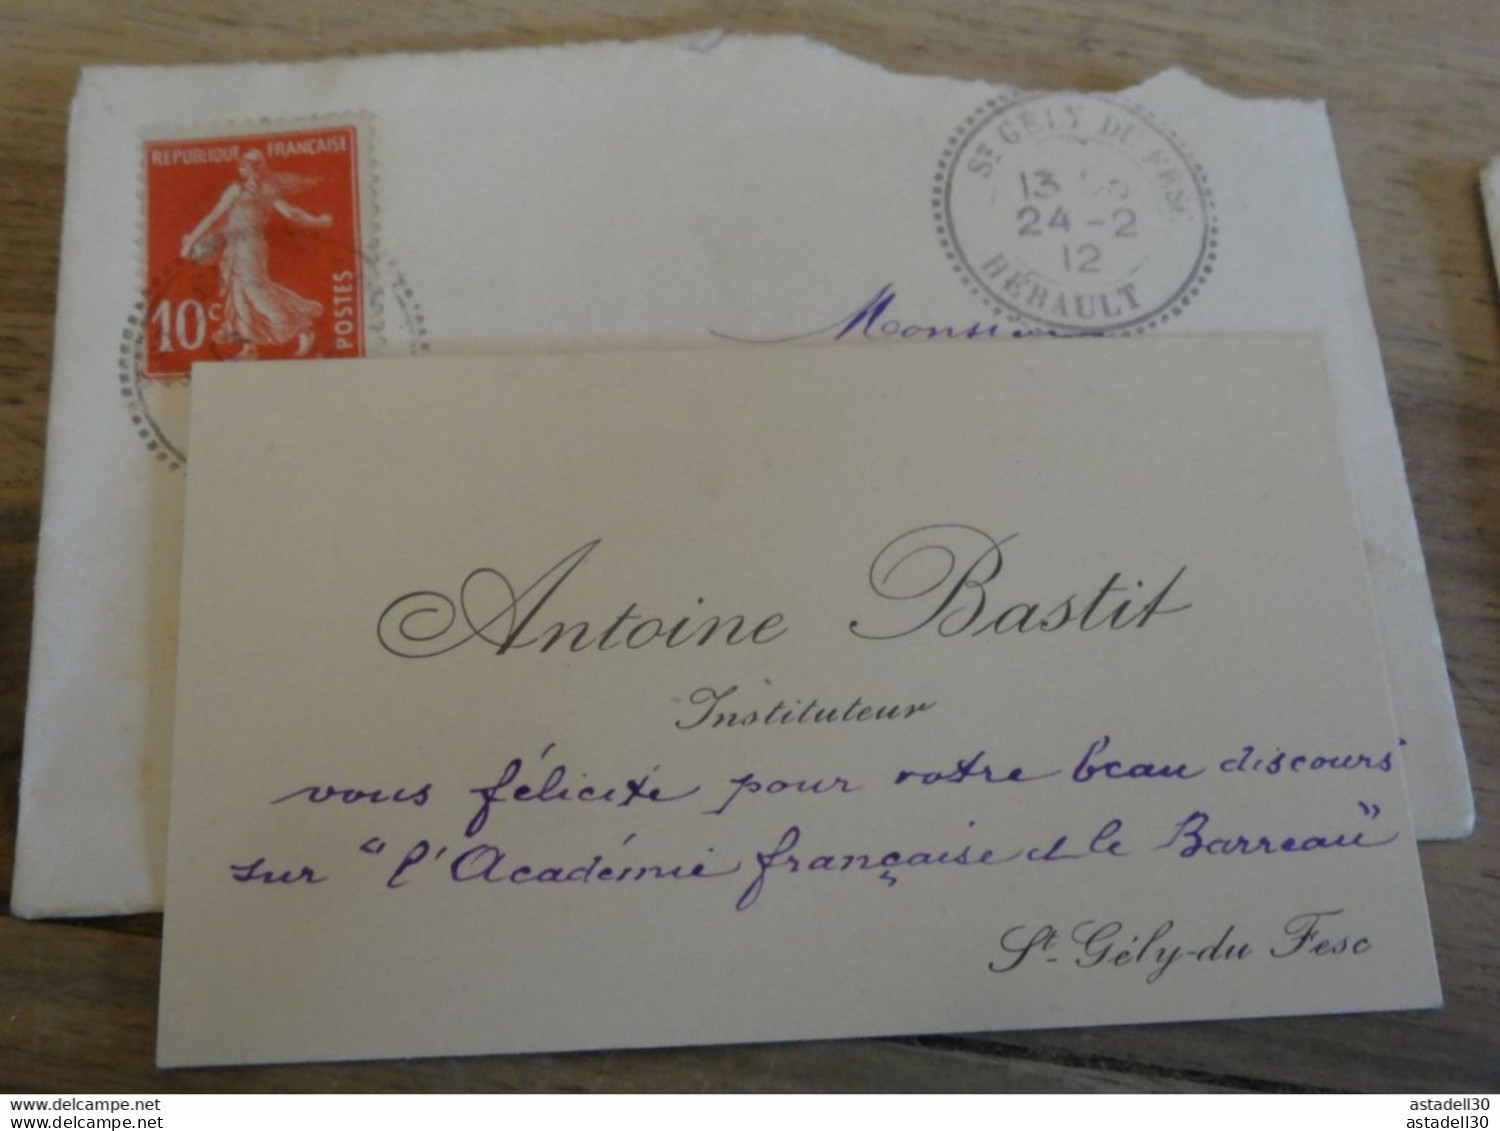 Carte De Visite De Antoine BASTIT, SAINT GELY DU FESC - 1912  ........PHI ........ E1-144a - Cartes De Visite